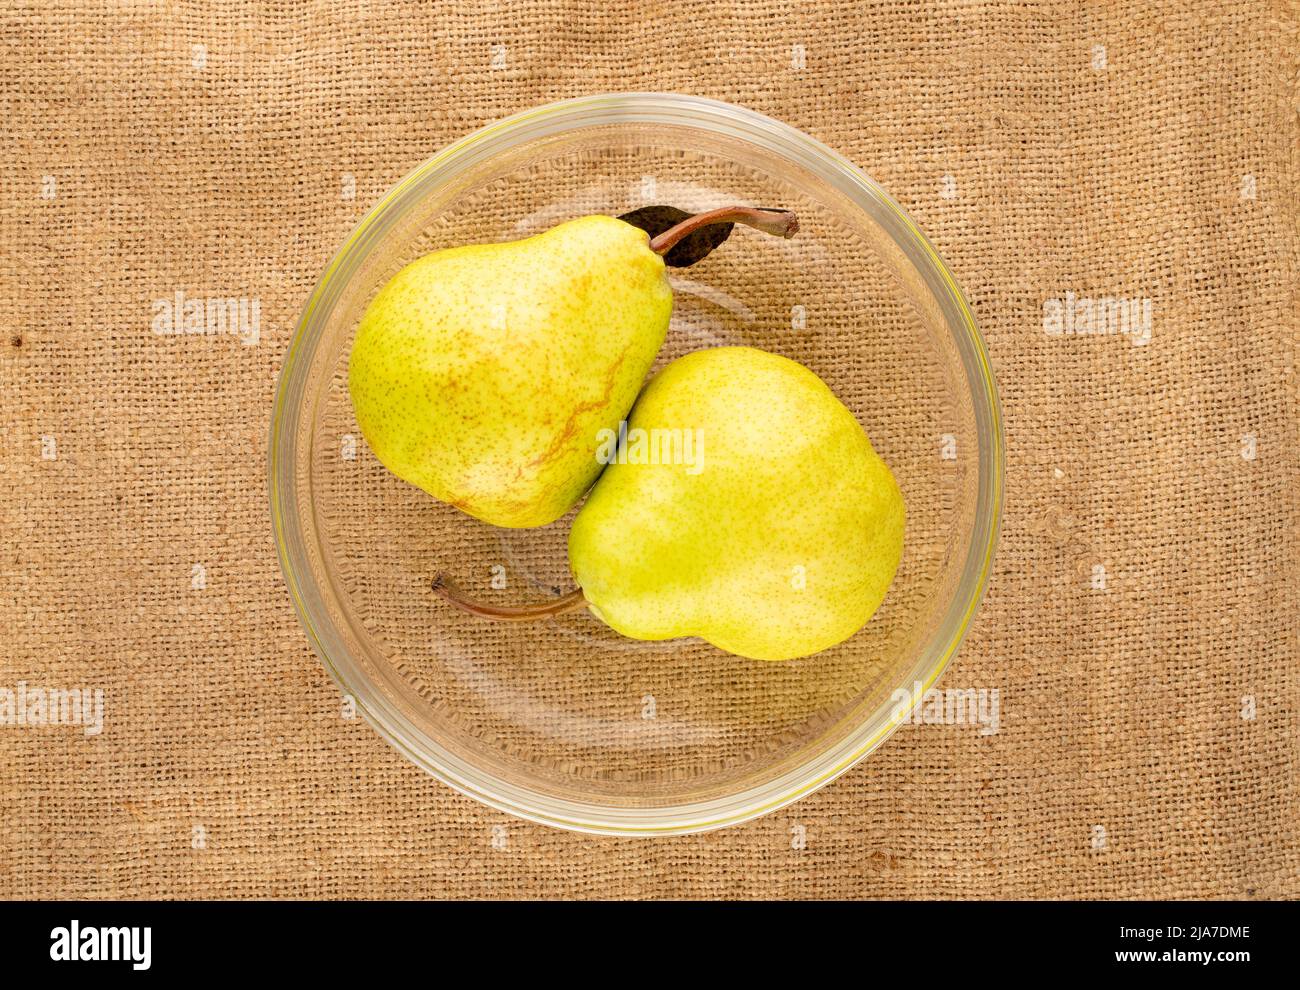 Deux poires biologiques juteuses dans un bol en verre sur un chiffon jute, vue rapprochée du dessus. Banque D'Images